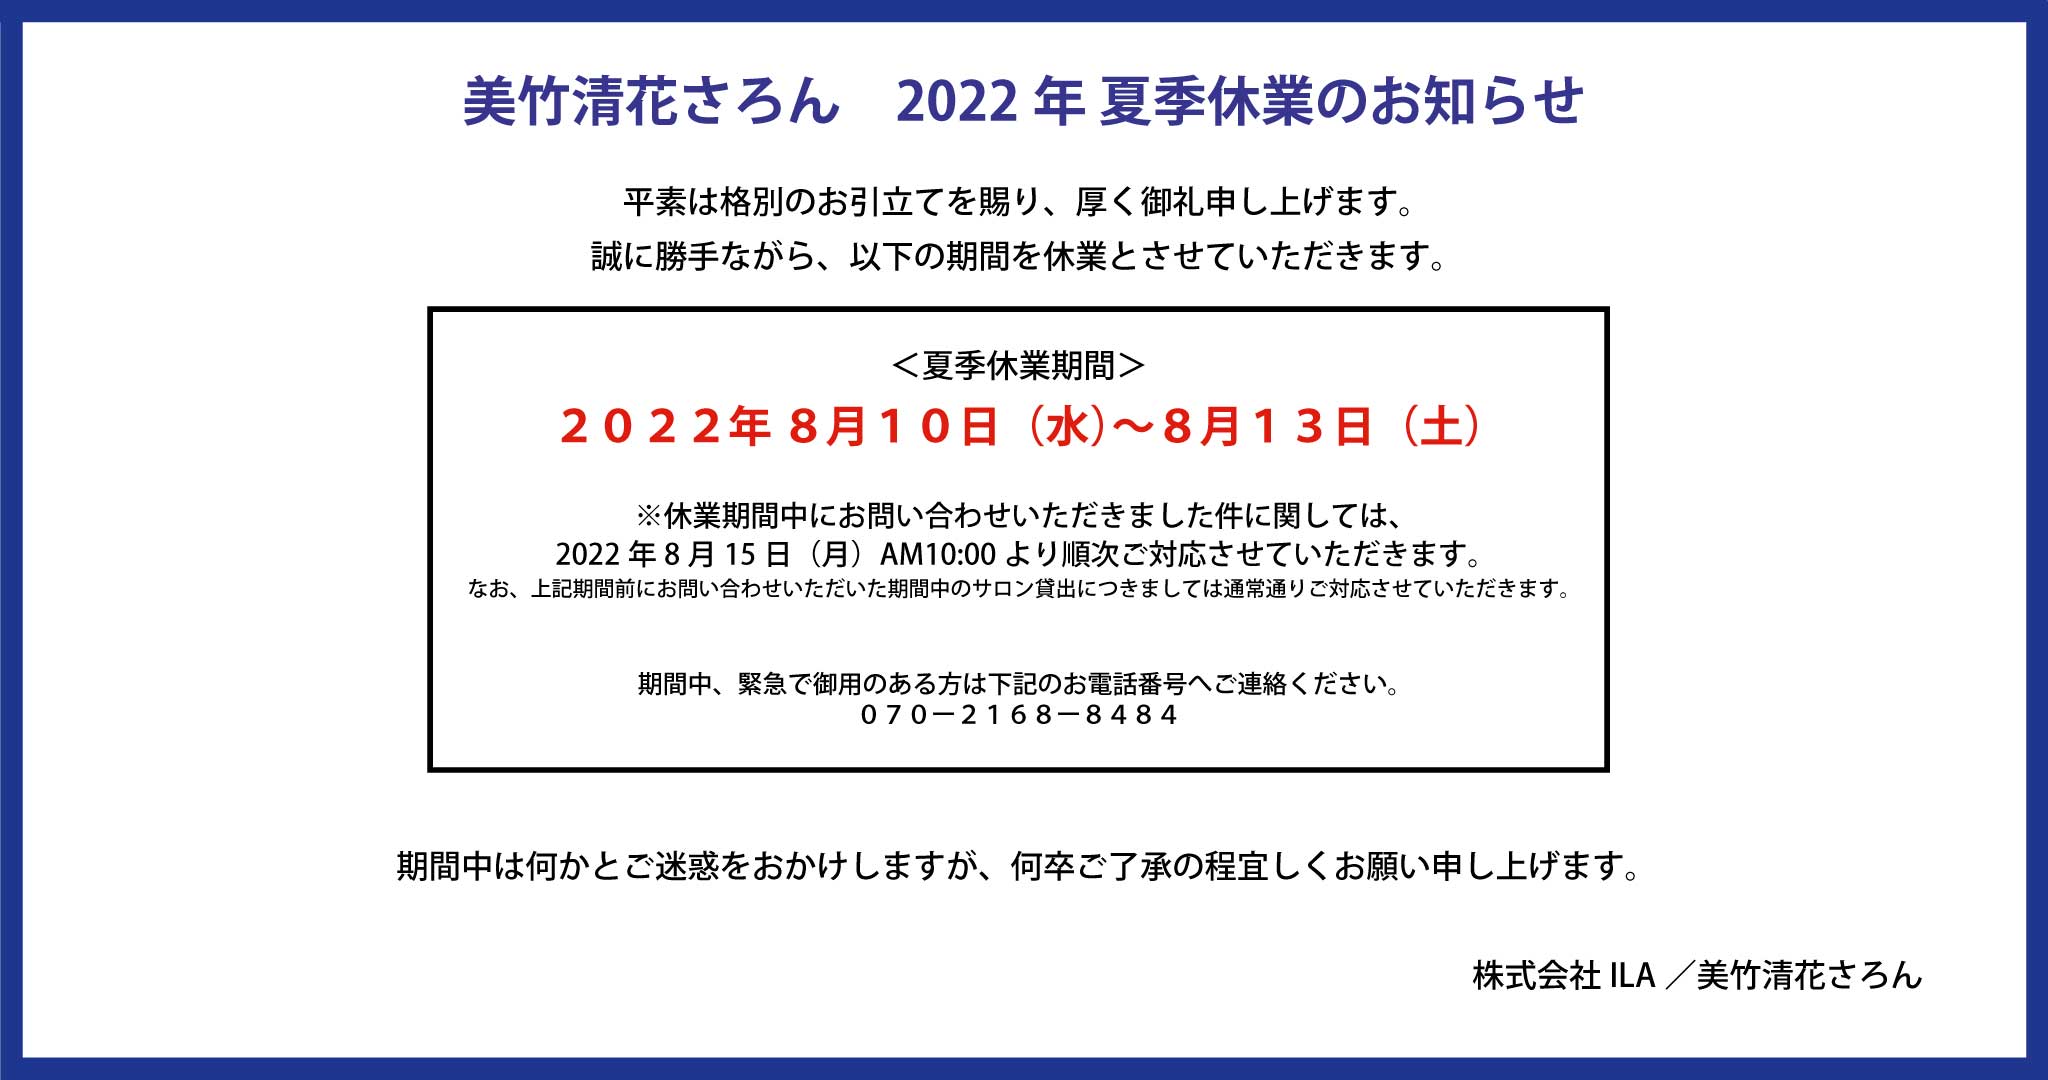 【お知らせ】2022年 夏季休業のお知らせ